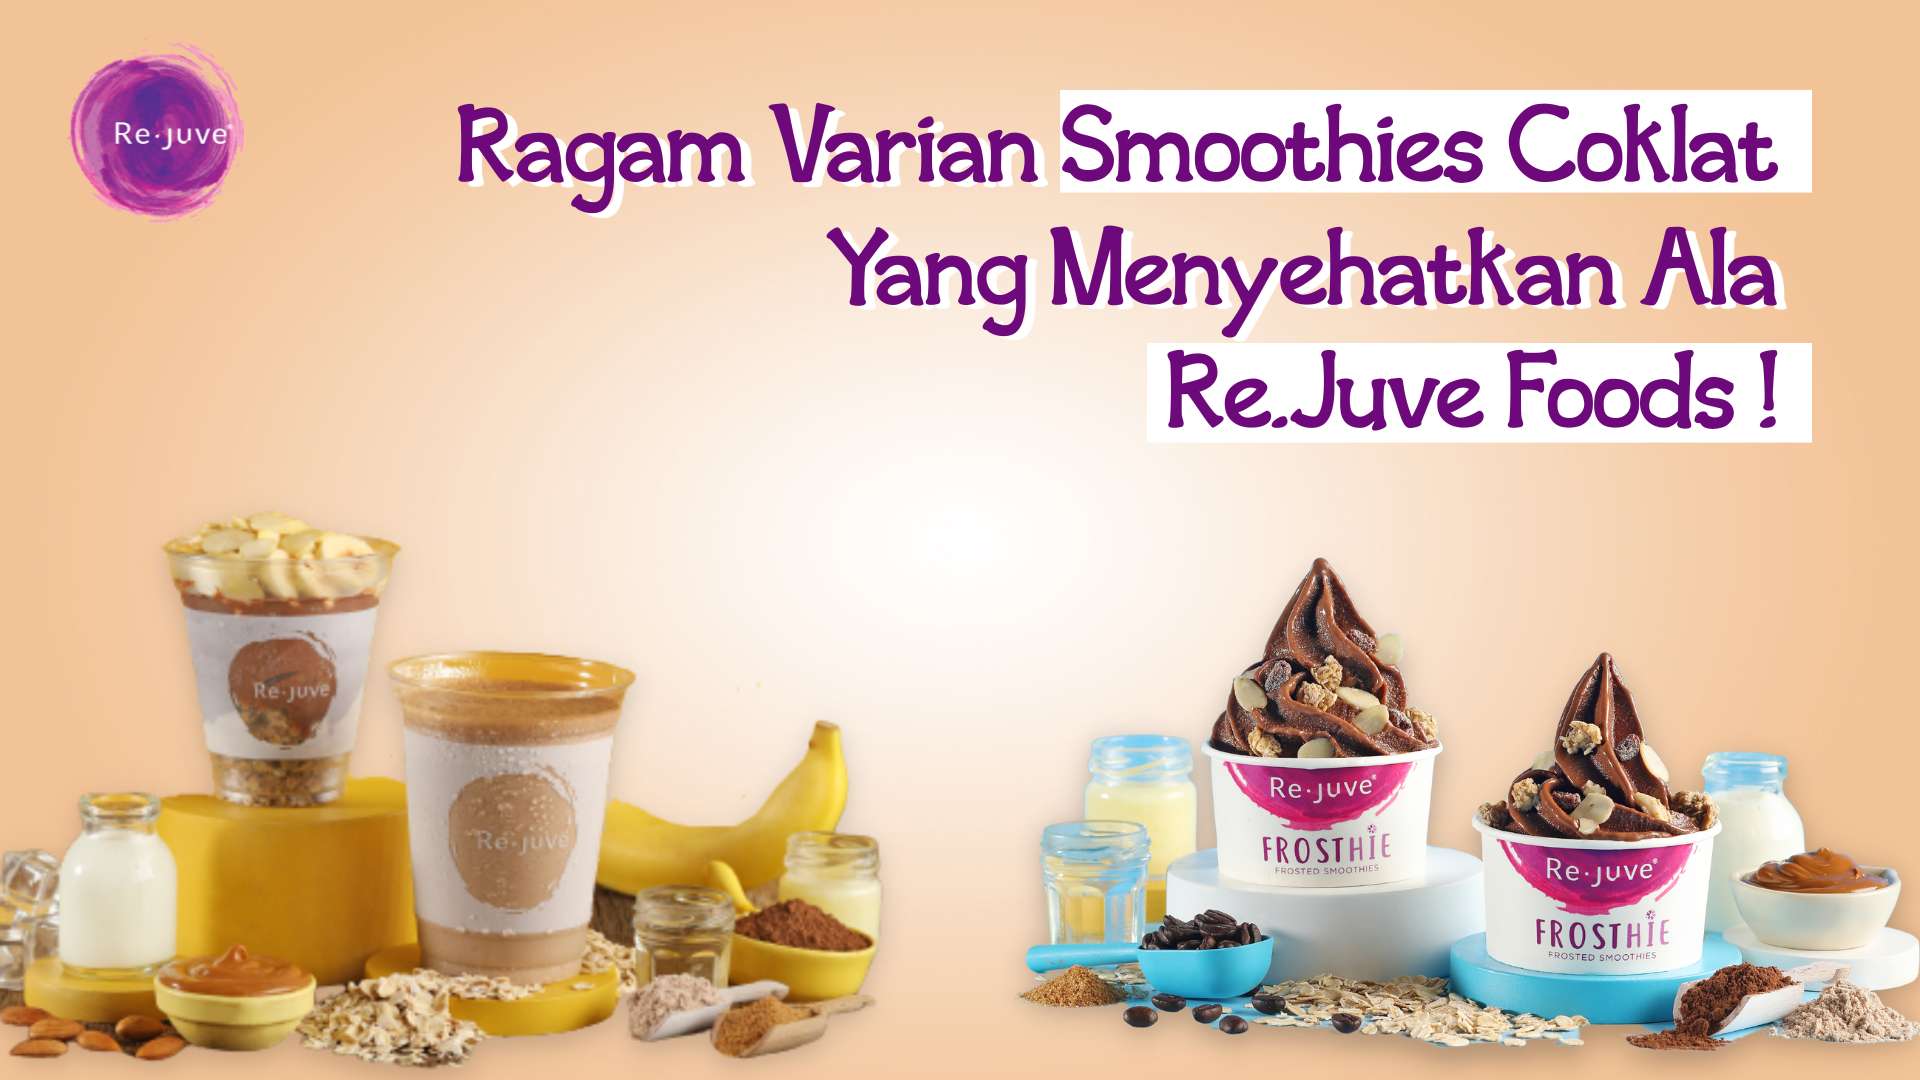 Ragam Varian Smoothies Coklat Yang Menyehatkan Ala Re.Juve Foods Re.Juve